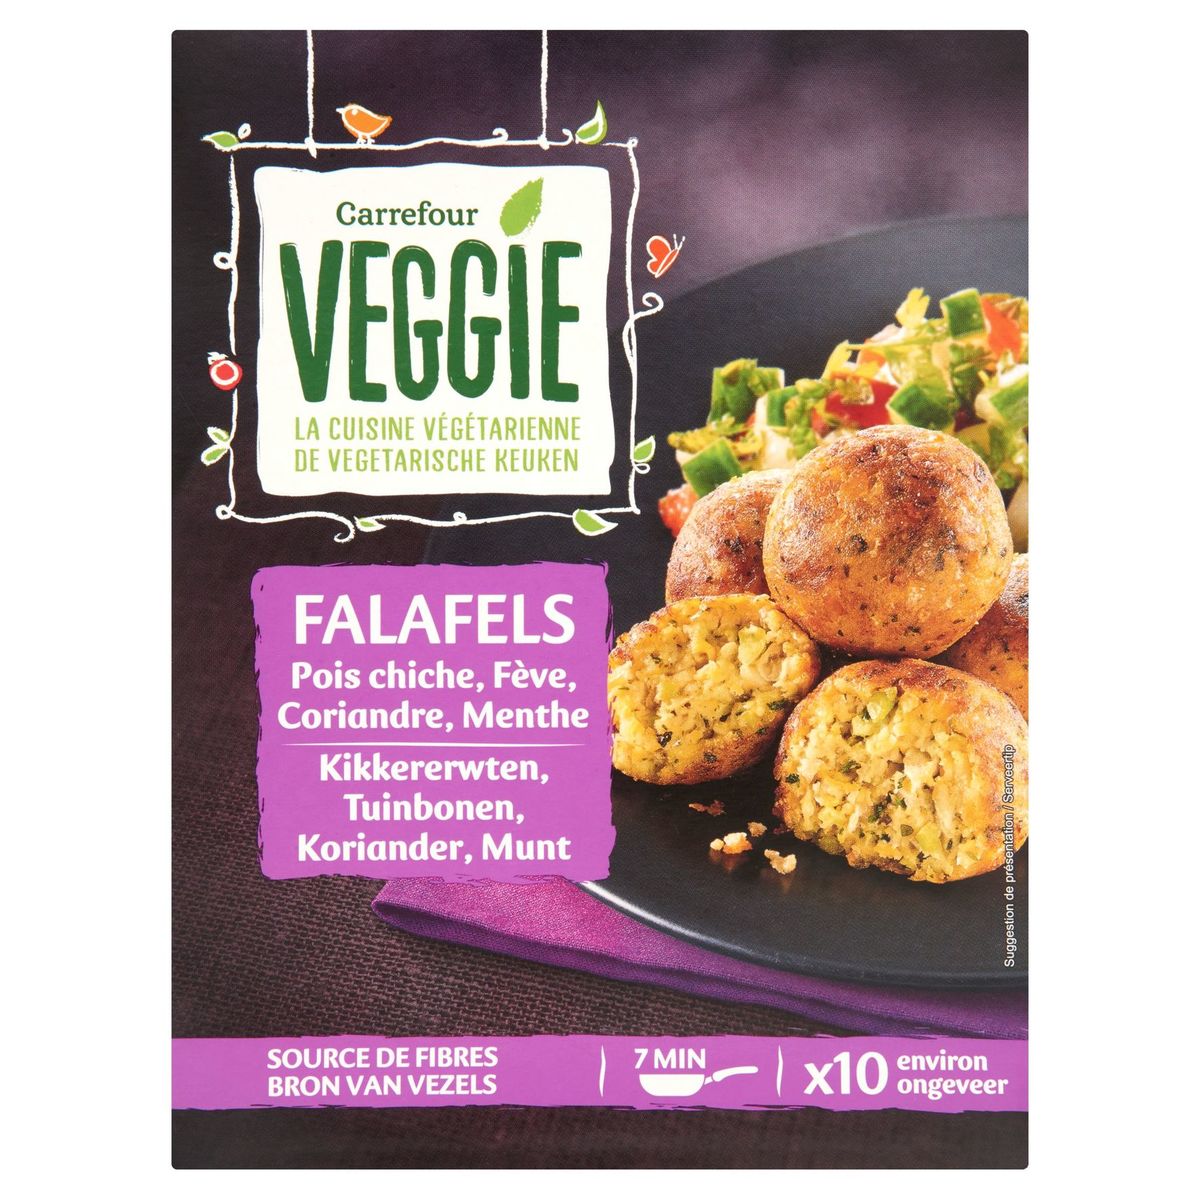 Carrefour Veggie Falafels Pois Chiche, Fève, Coriandre, Menthe 200 g